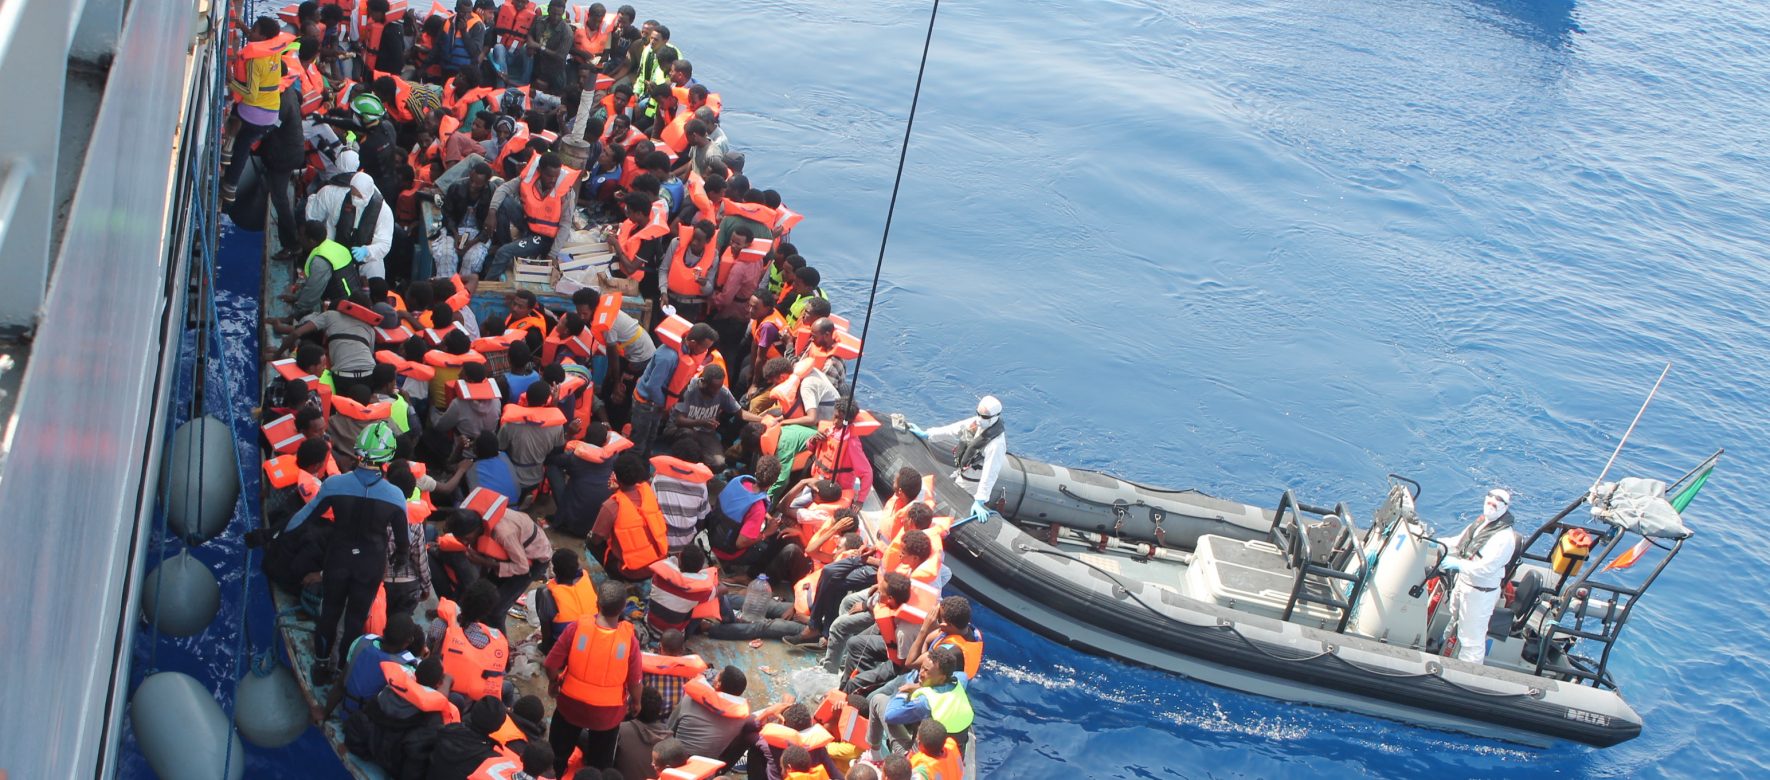 Reportage sur la crise migratoire en Méditerranée